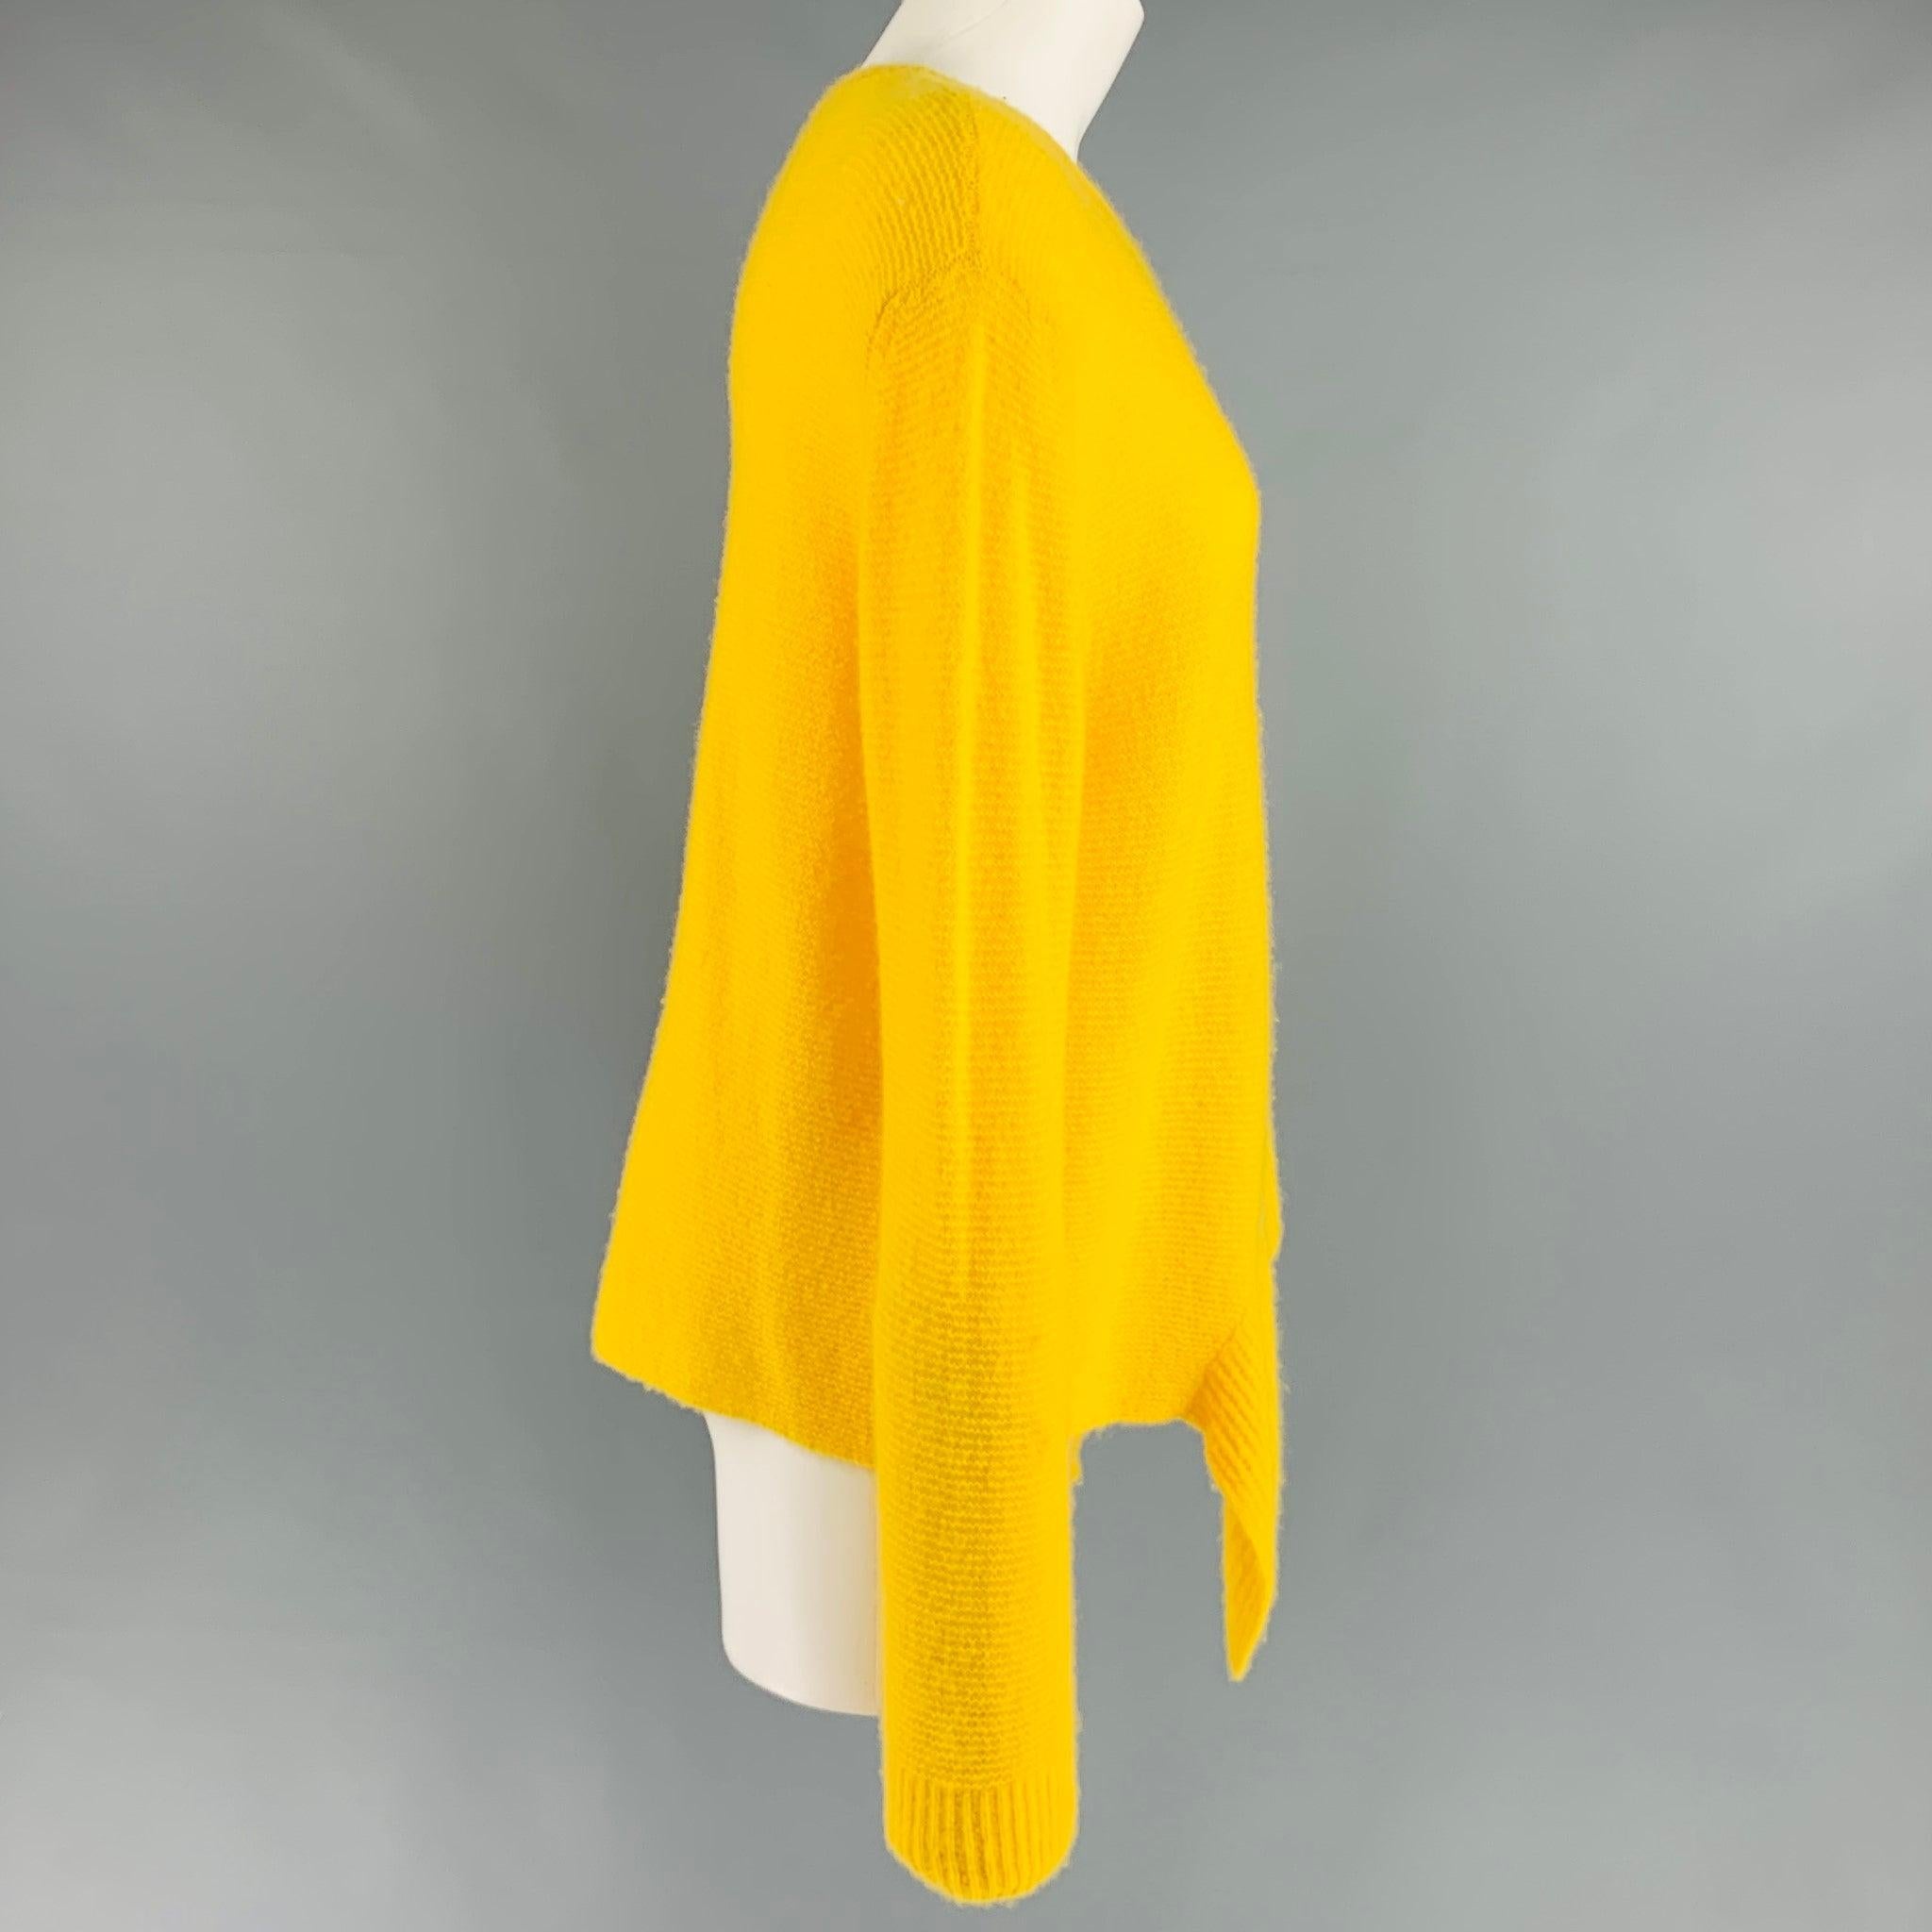 Ce pull-over STELLA McCARTNEY en cachemire et soie tricotés jaunes présente un ourlet asymétrique. Fabriqué en Italie. Excellent état. 

Marqué :   6 

Mesures : 
 
Épaule : 18 inPoitrine : 41 inManches : 27 inLongueur : 27 in 
  
  
 
Numéro de